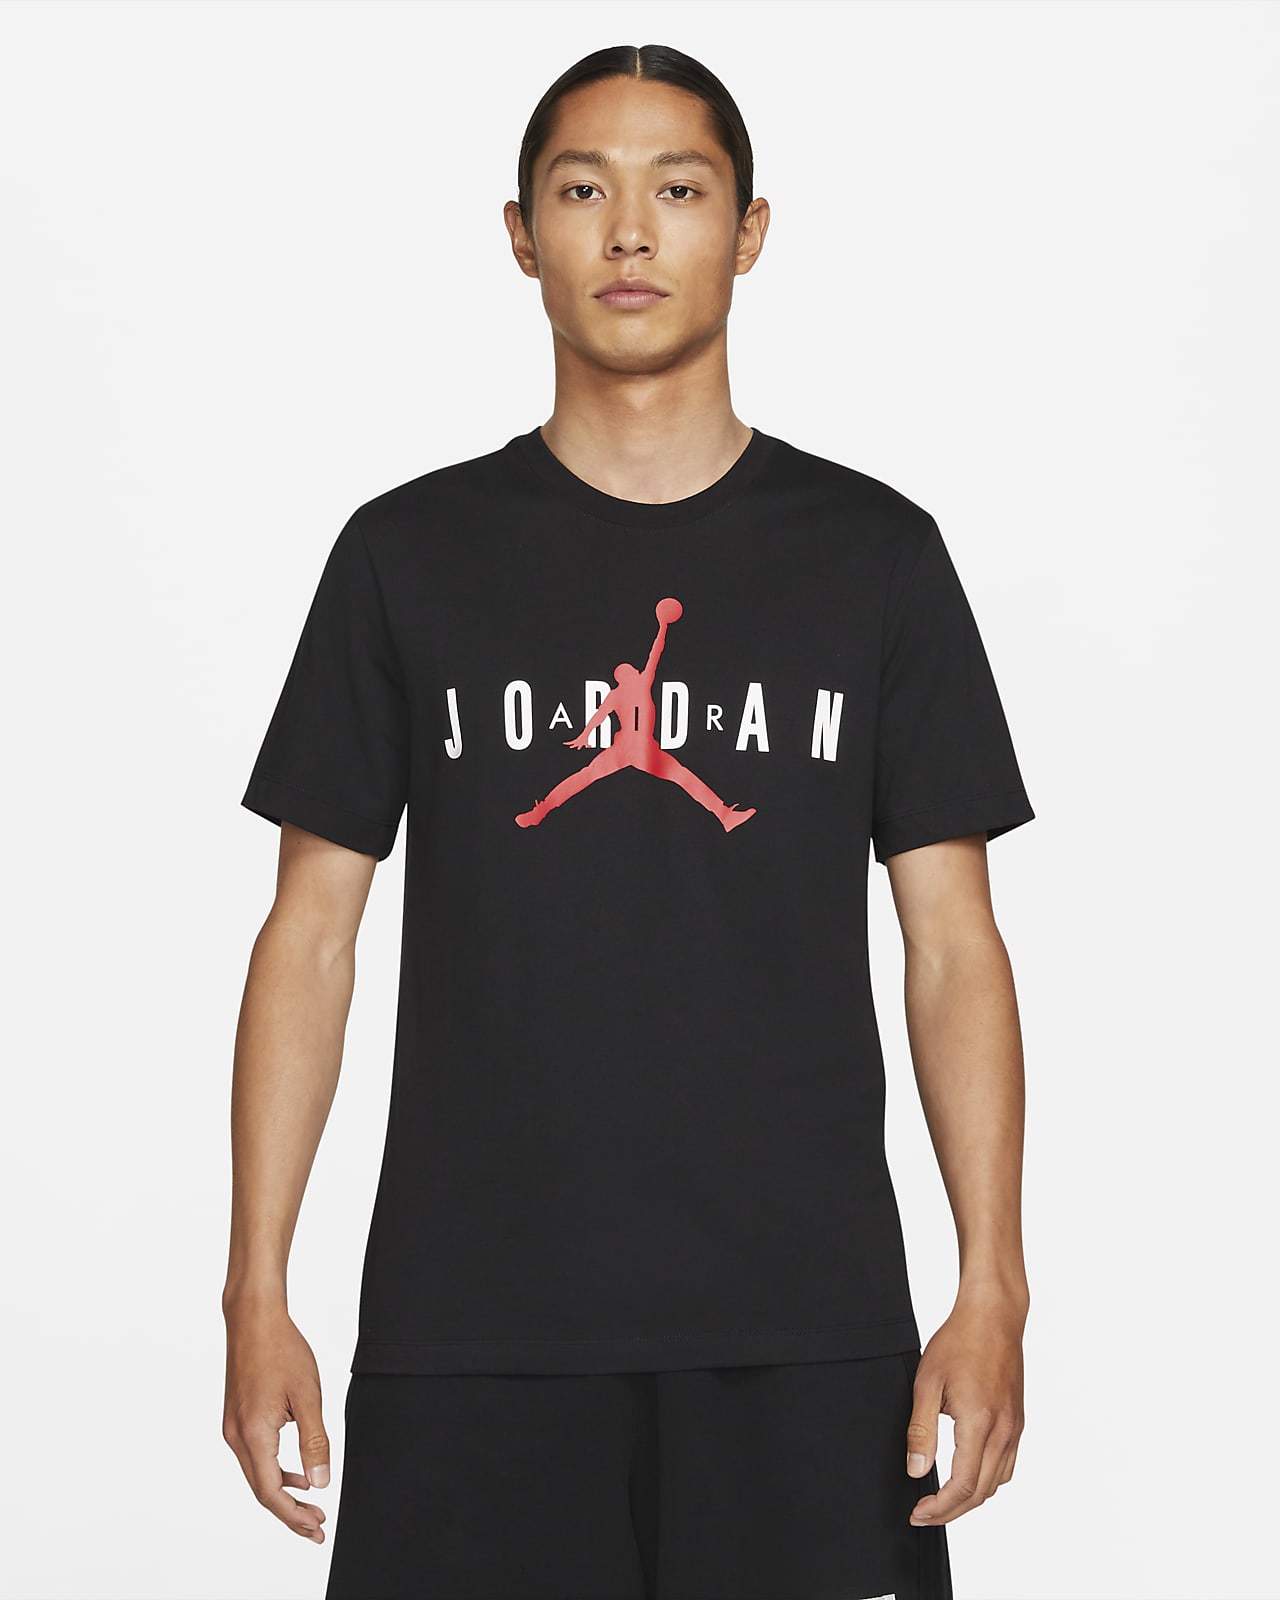 højen Gum Formode Tee Shirt Jordan Air Discount, SAVE 47% - mpgc.net